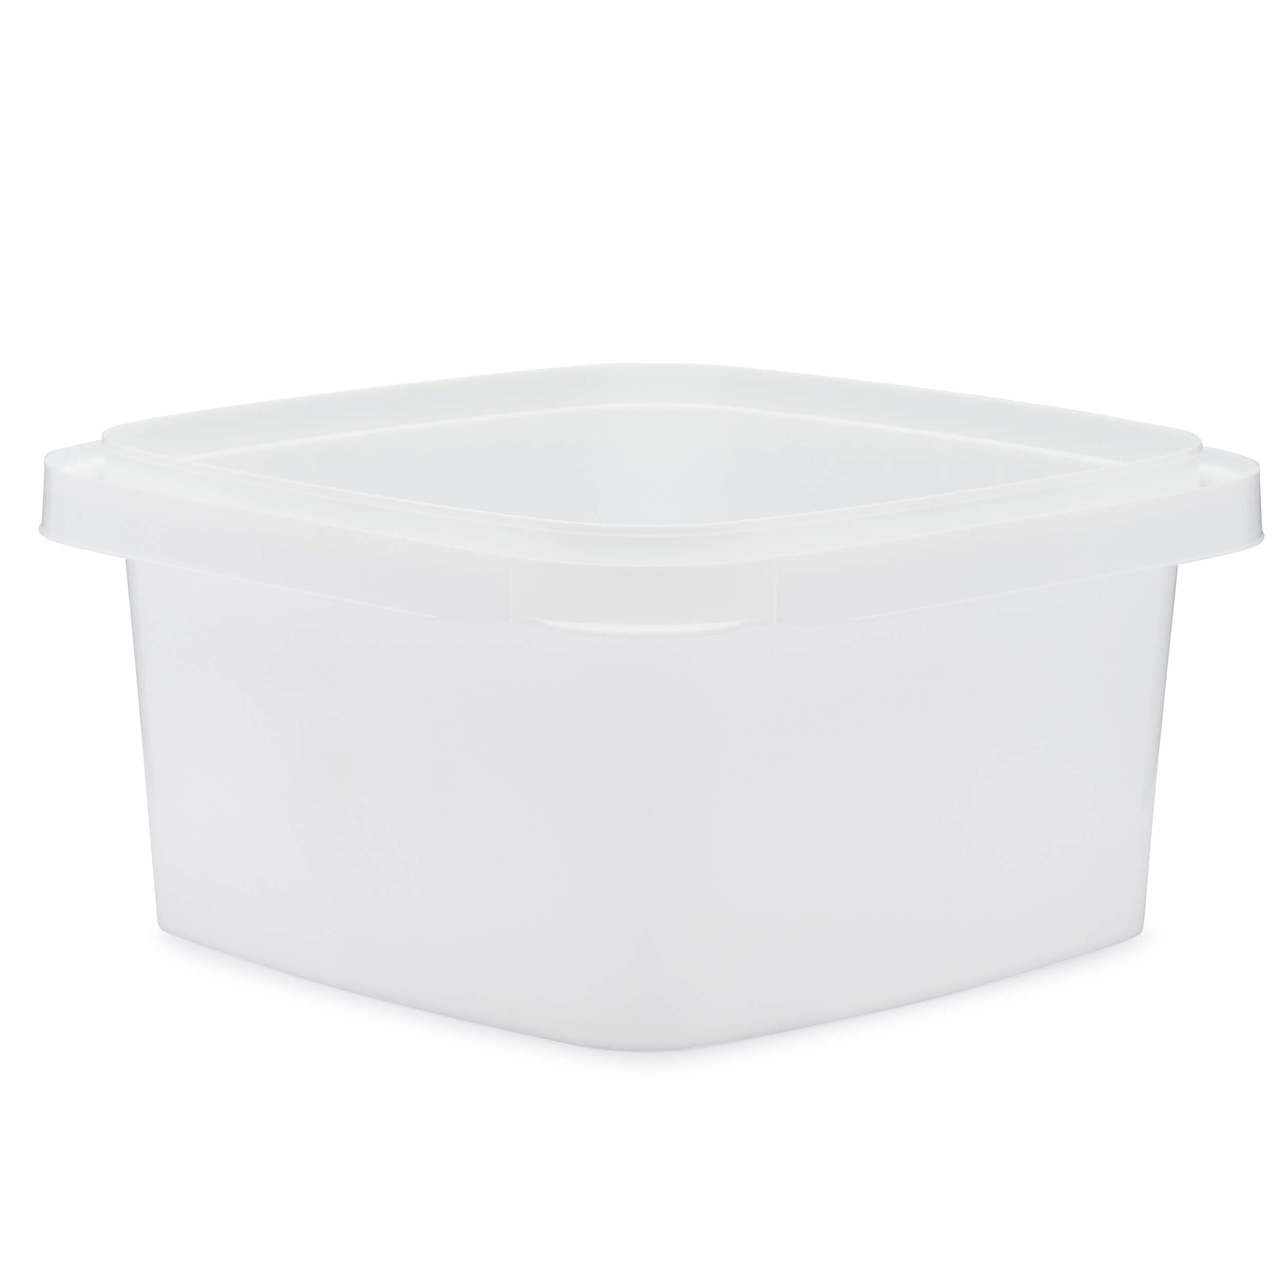 32 oz White IPL Square Container, 100 Case Pack